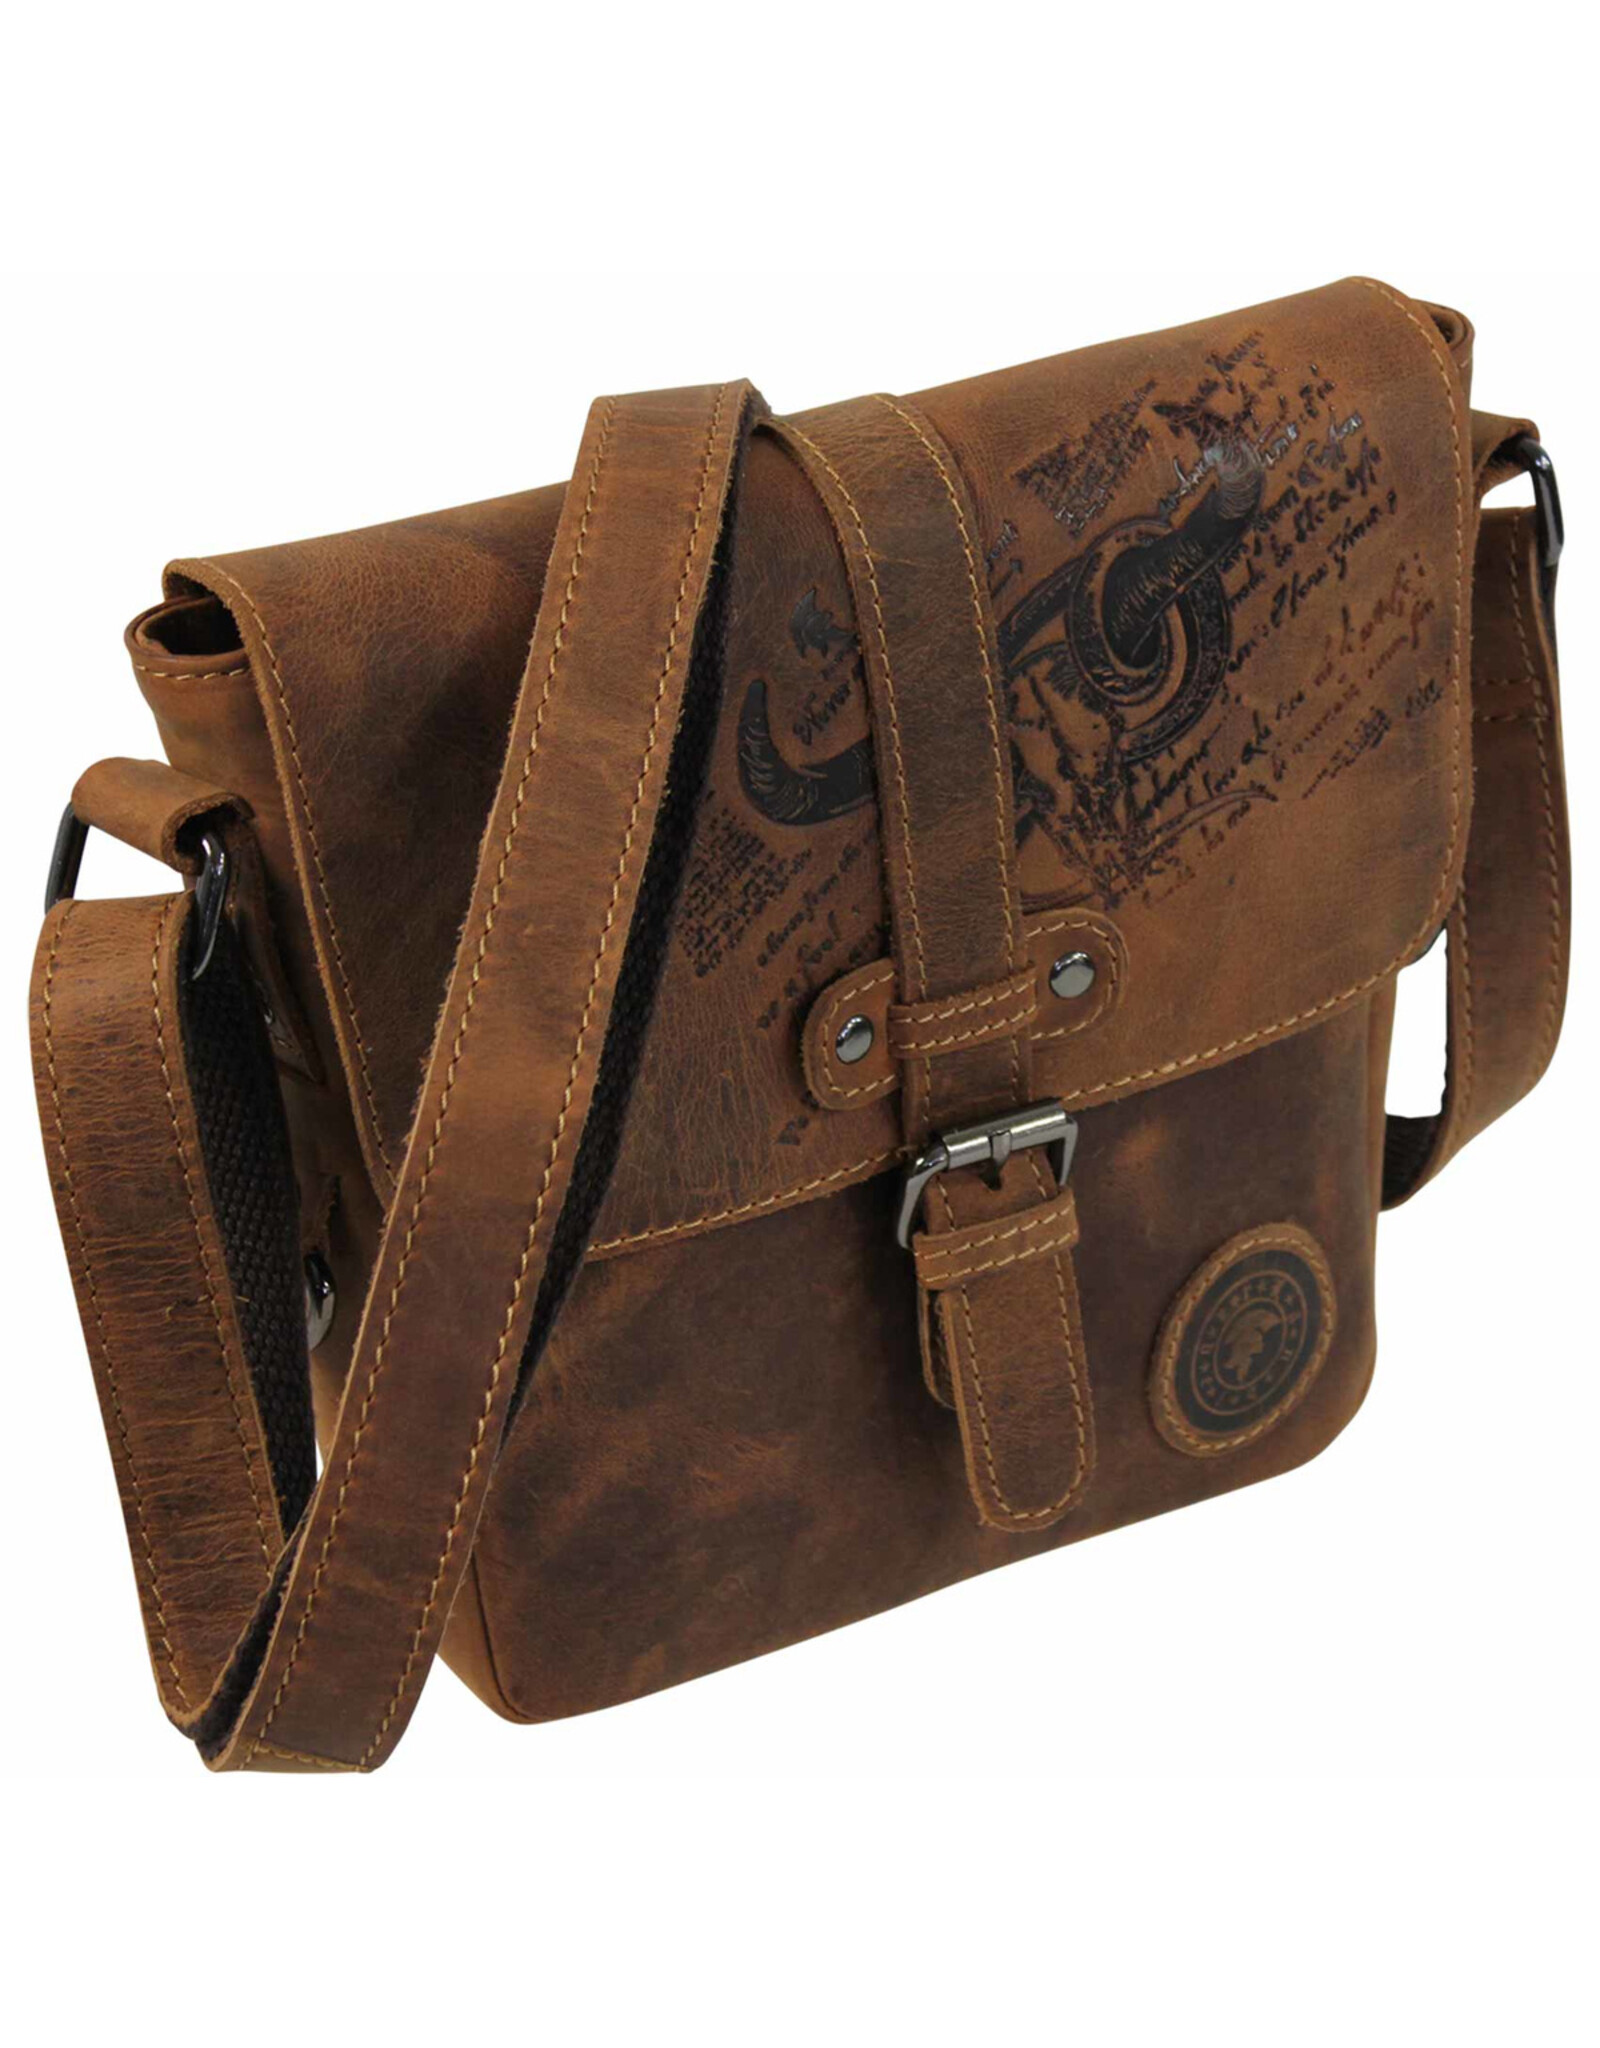 LandLeder Leather bags - Shoulder bag BULL & SNAKE with safety lock Buffalo Leather